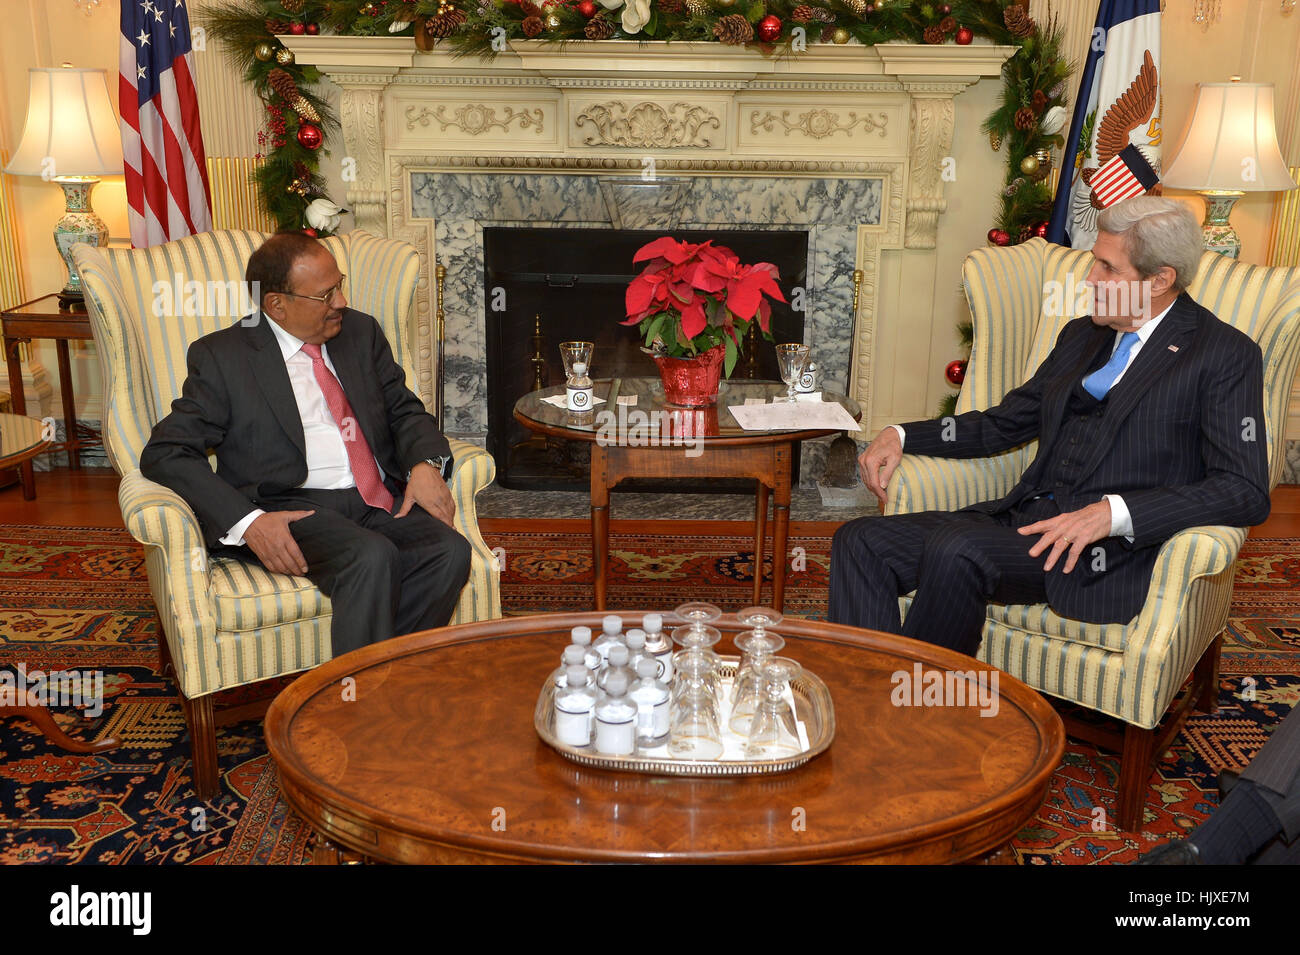 Le secrétaire d'Etat John Kerry rencontre le conseiller à la sécurité nationale indienne Ajit Doval, au Département d'État des États-Unis à Washington, D.C., le 20 décembre 2016. Banque D'Images